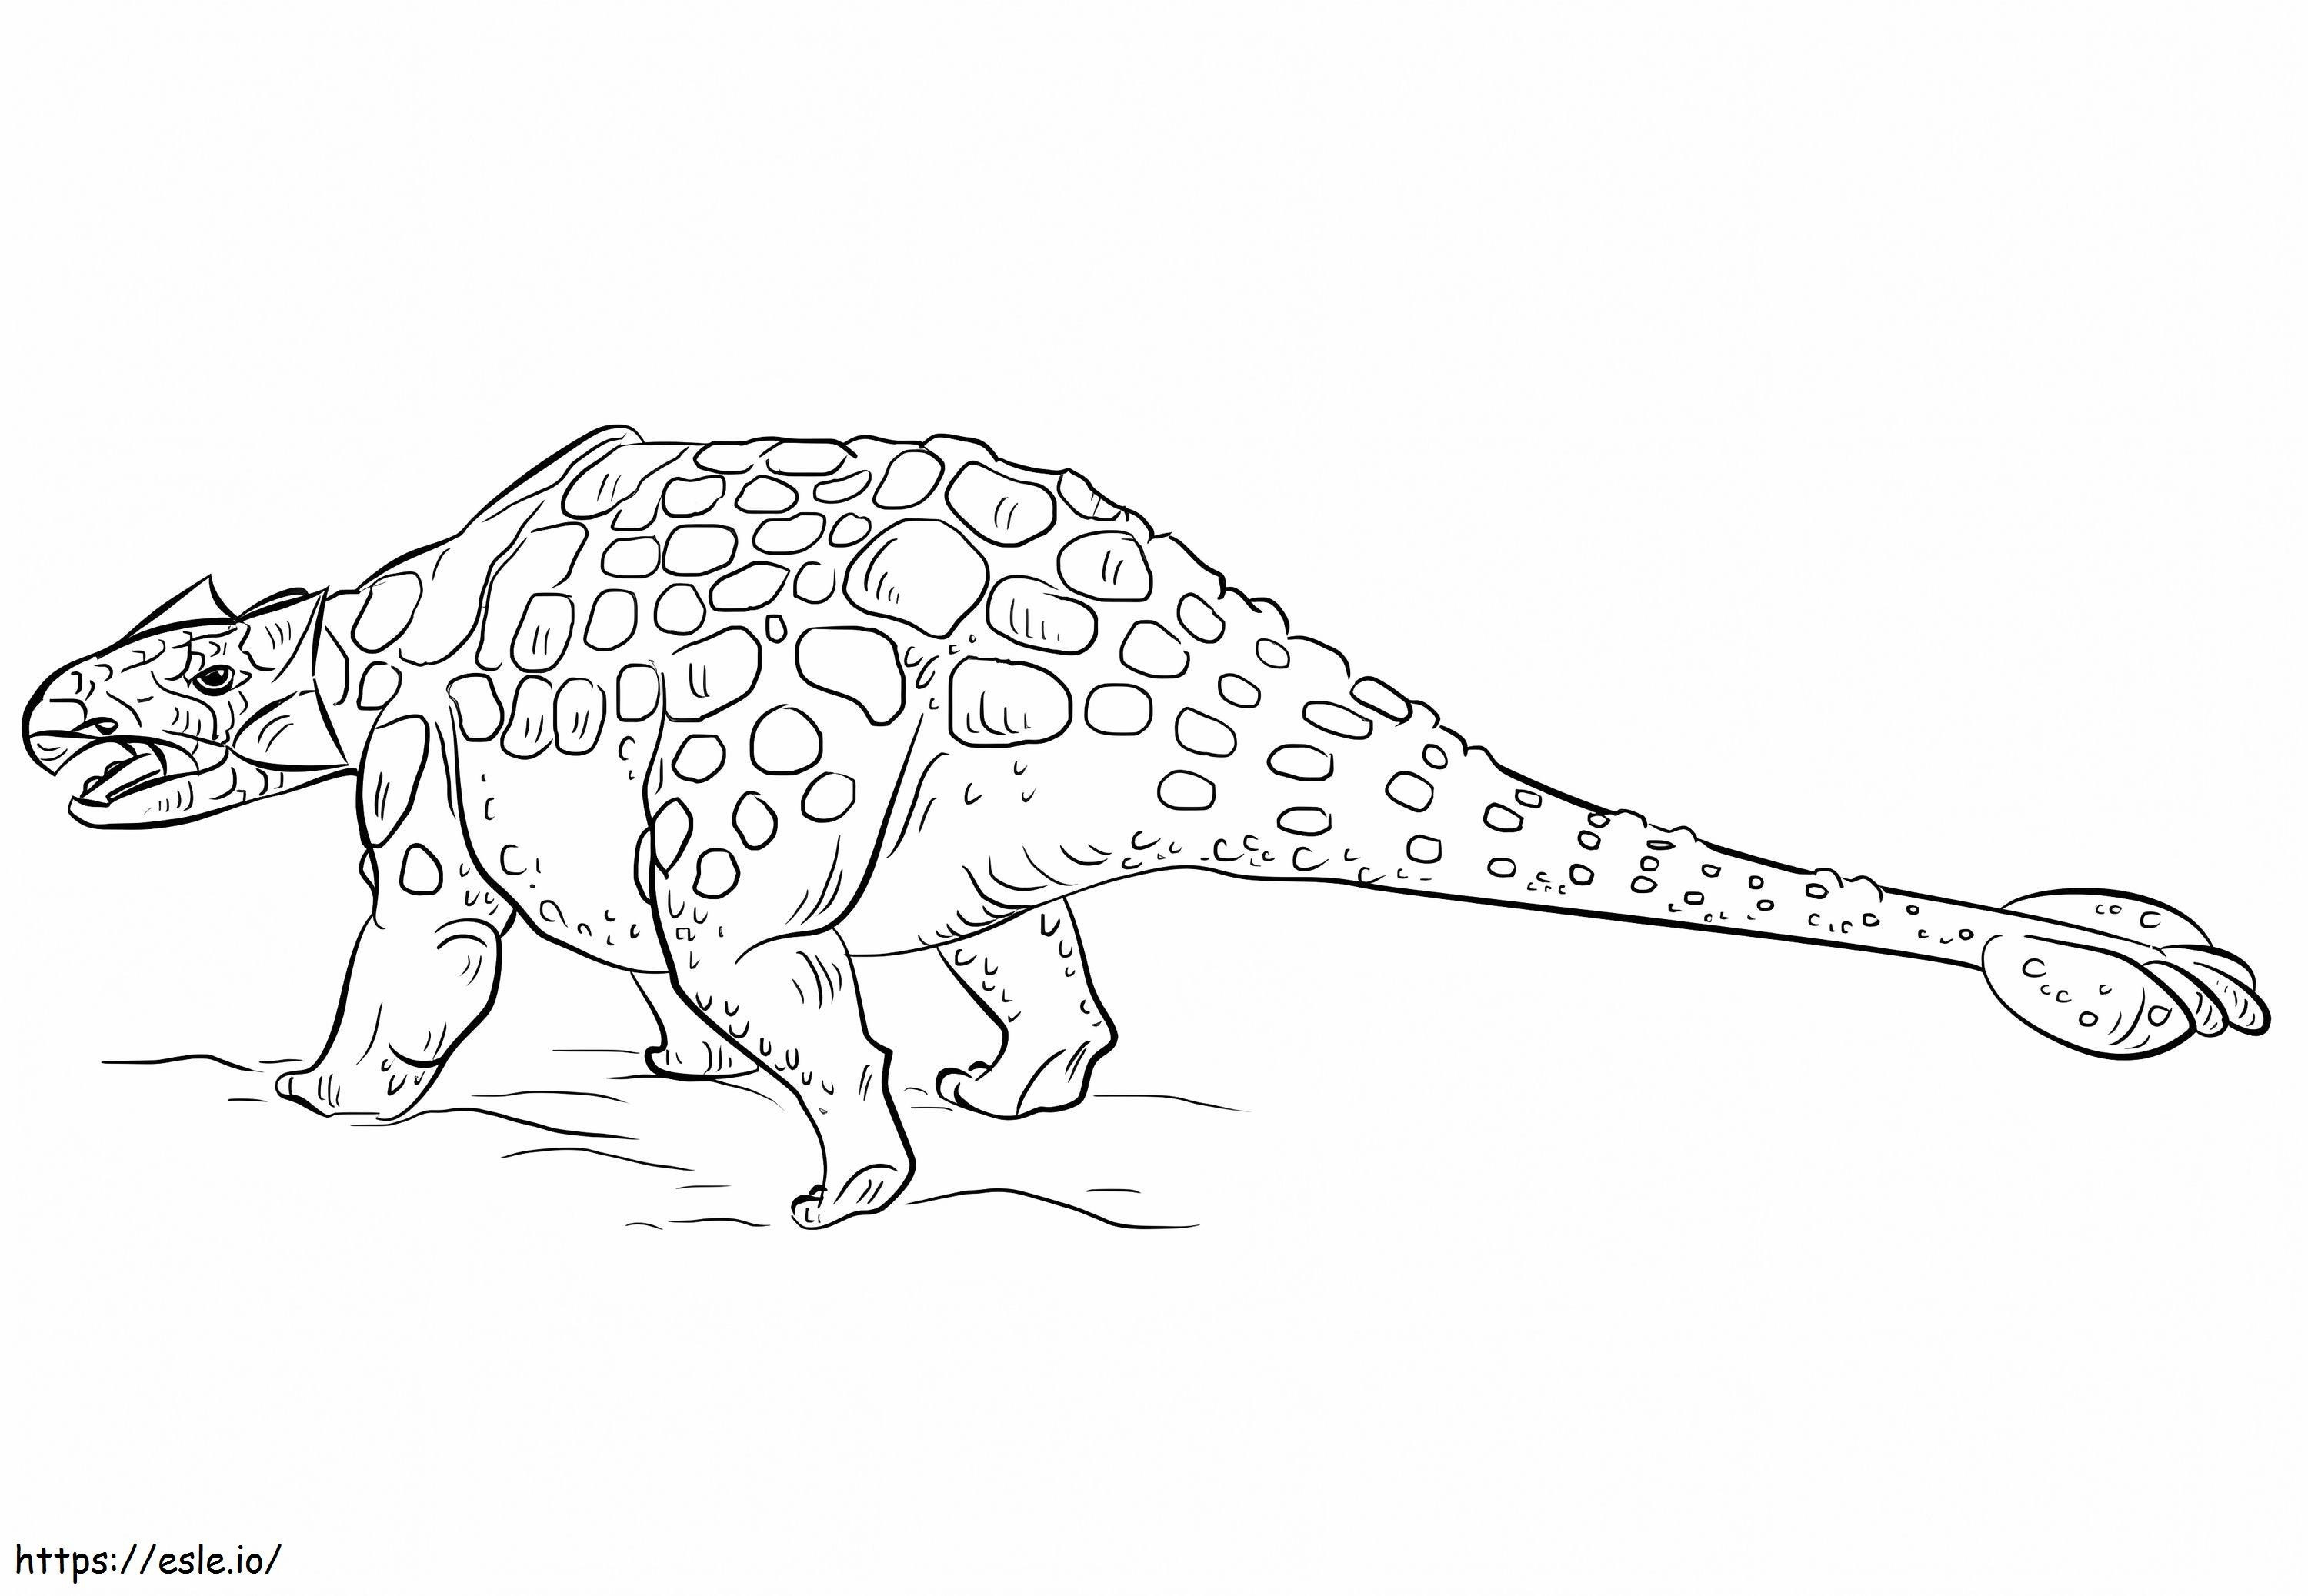 Dinossauro Anquilossauro para colorir